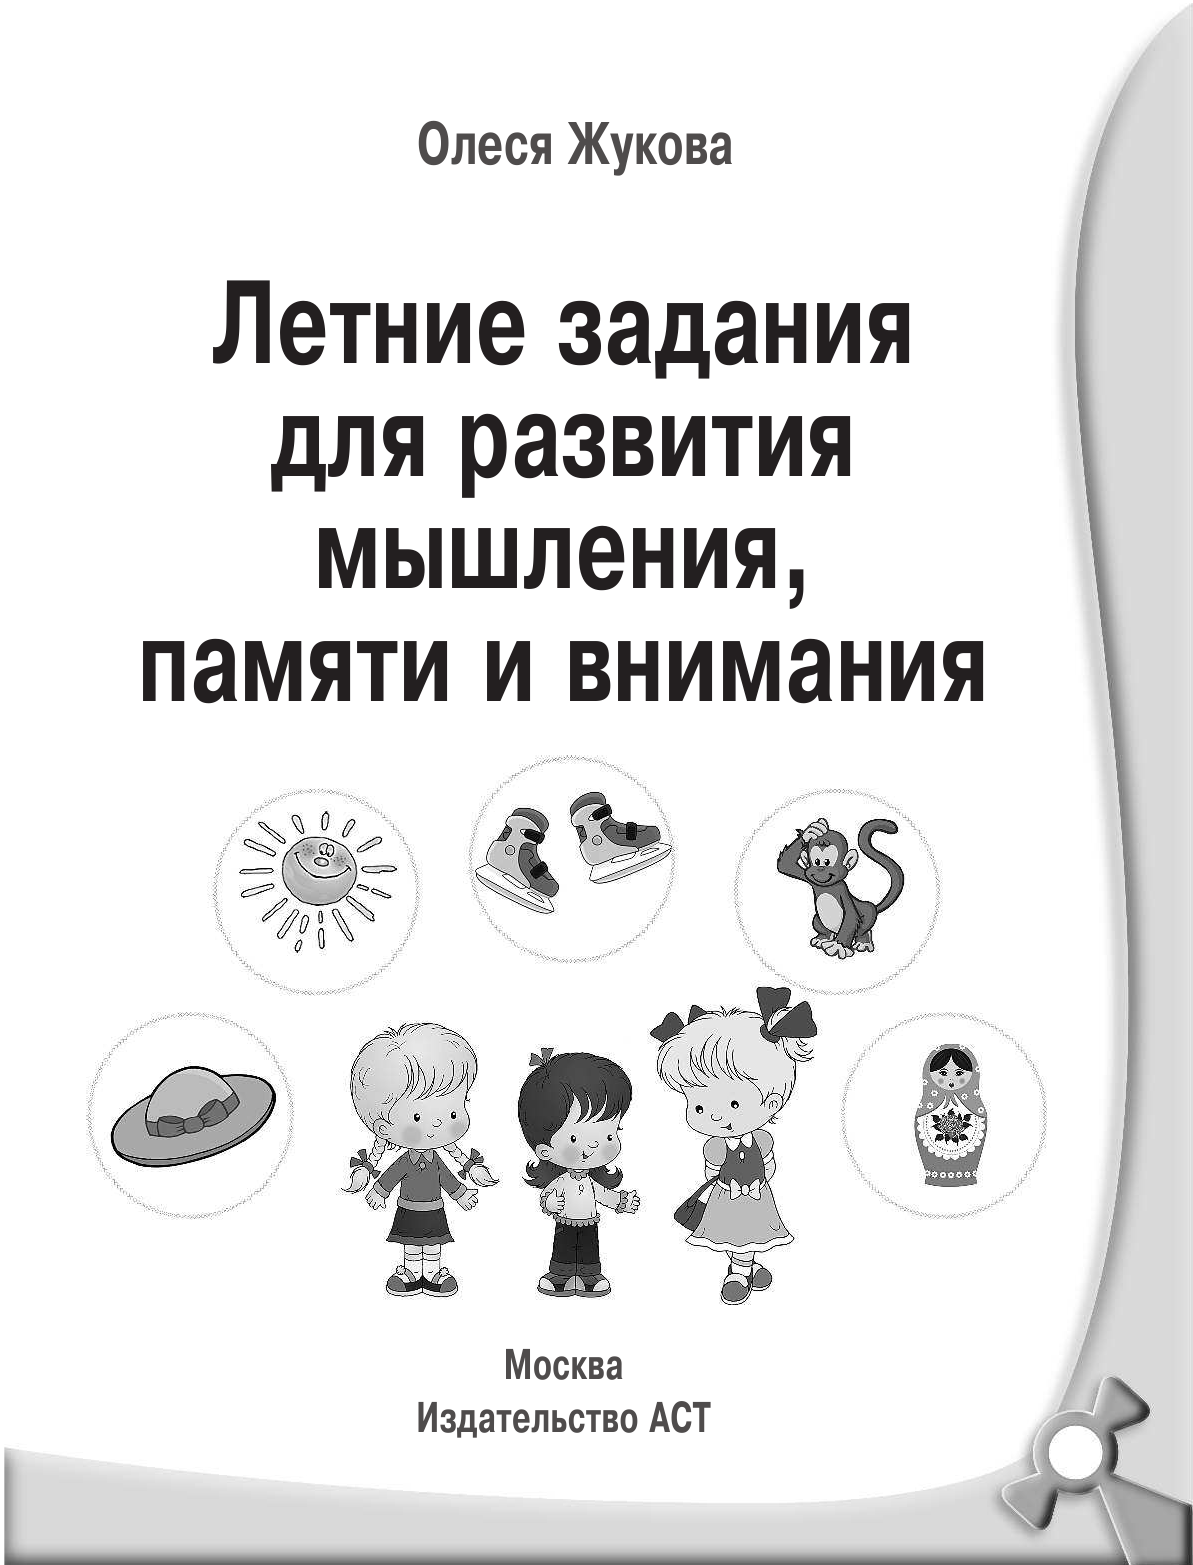 Жукова Олеся Станиславовна Летние задания для развития мышления, памяти и внимания - страница 2